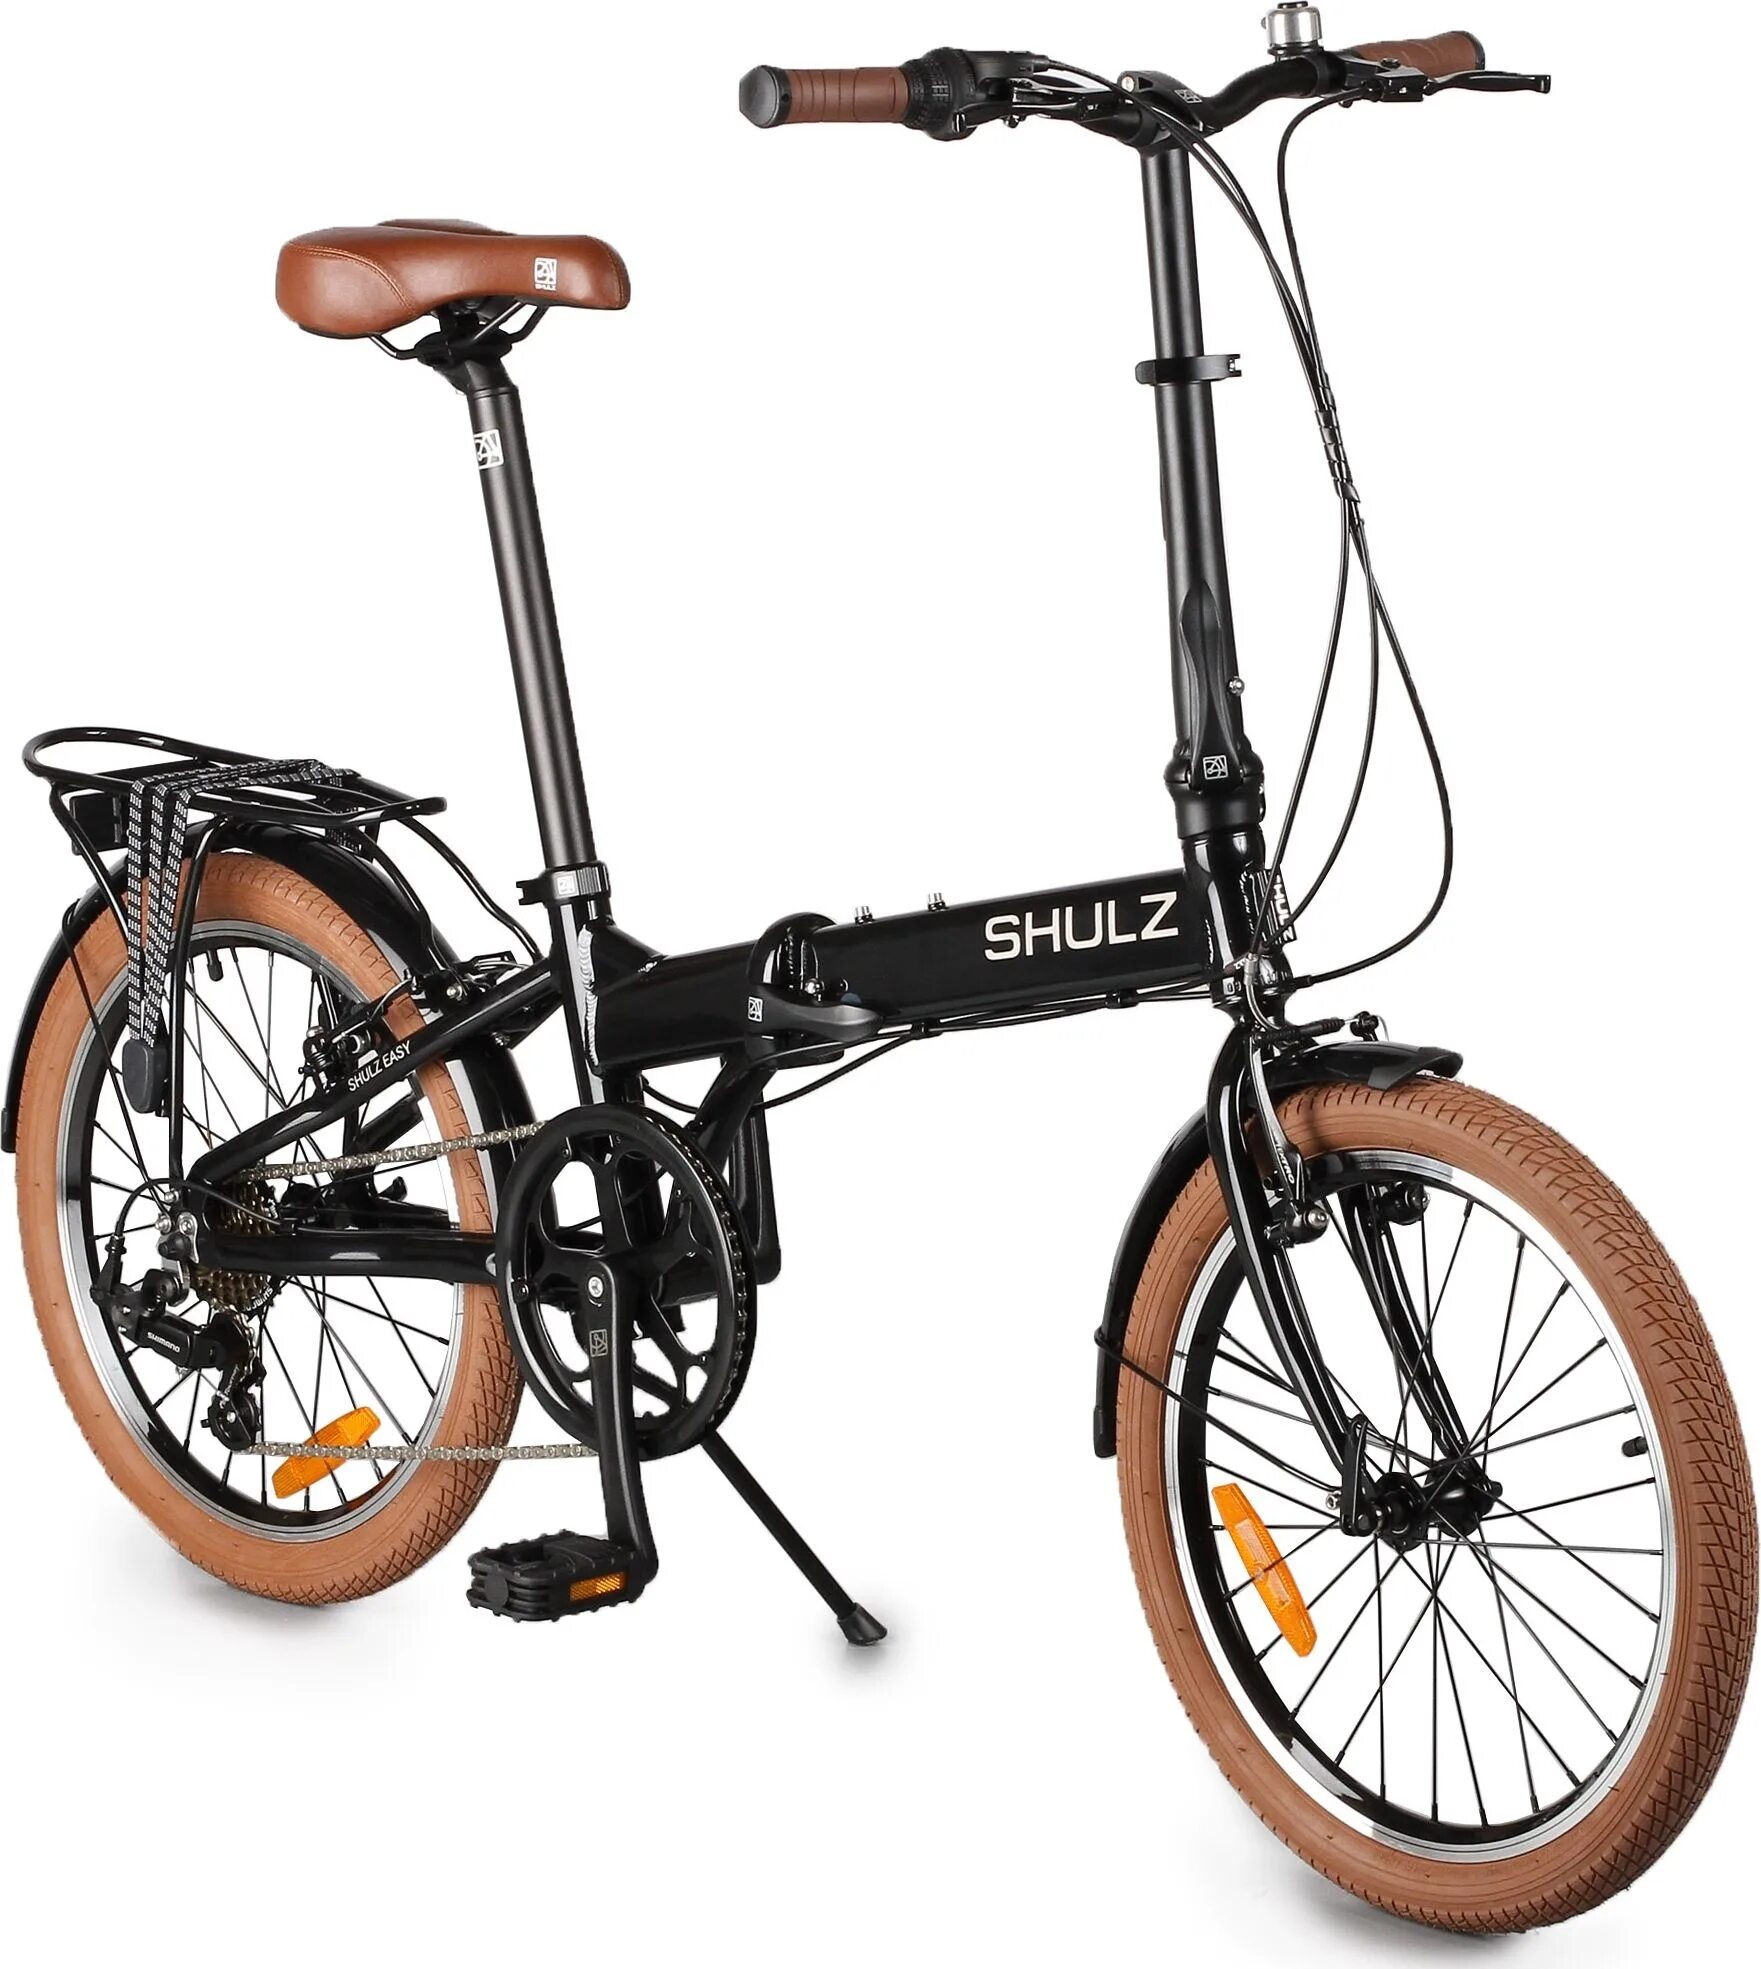 Городской велосипед Shulz easy. Складной велосипед Shulz easy. Городской велосипед Shulz Lentus. Велосипед Шульц складной алюминиевый. Велосипеды шульц складные купить